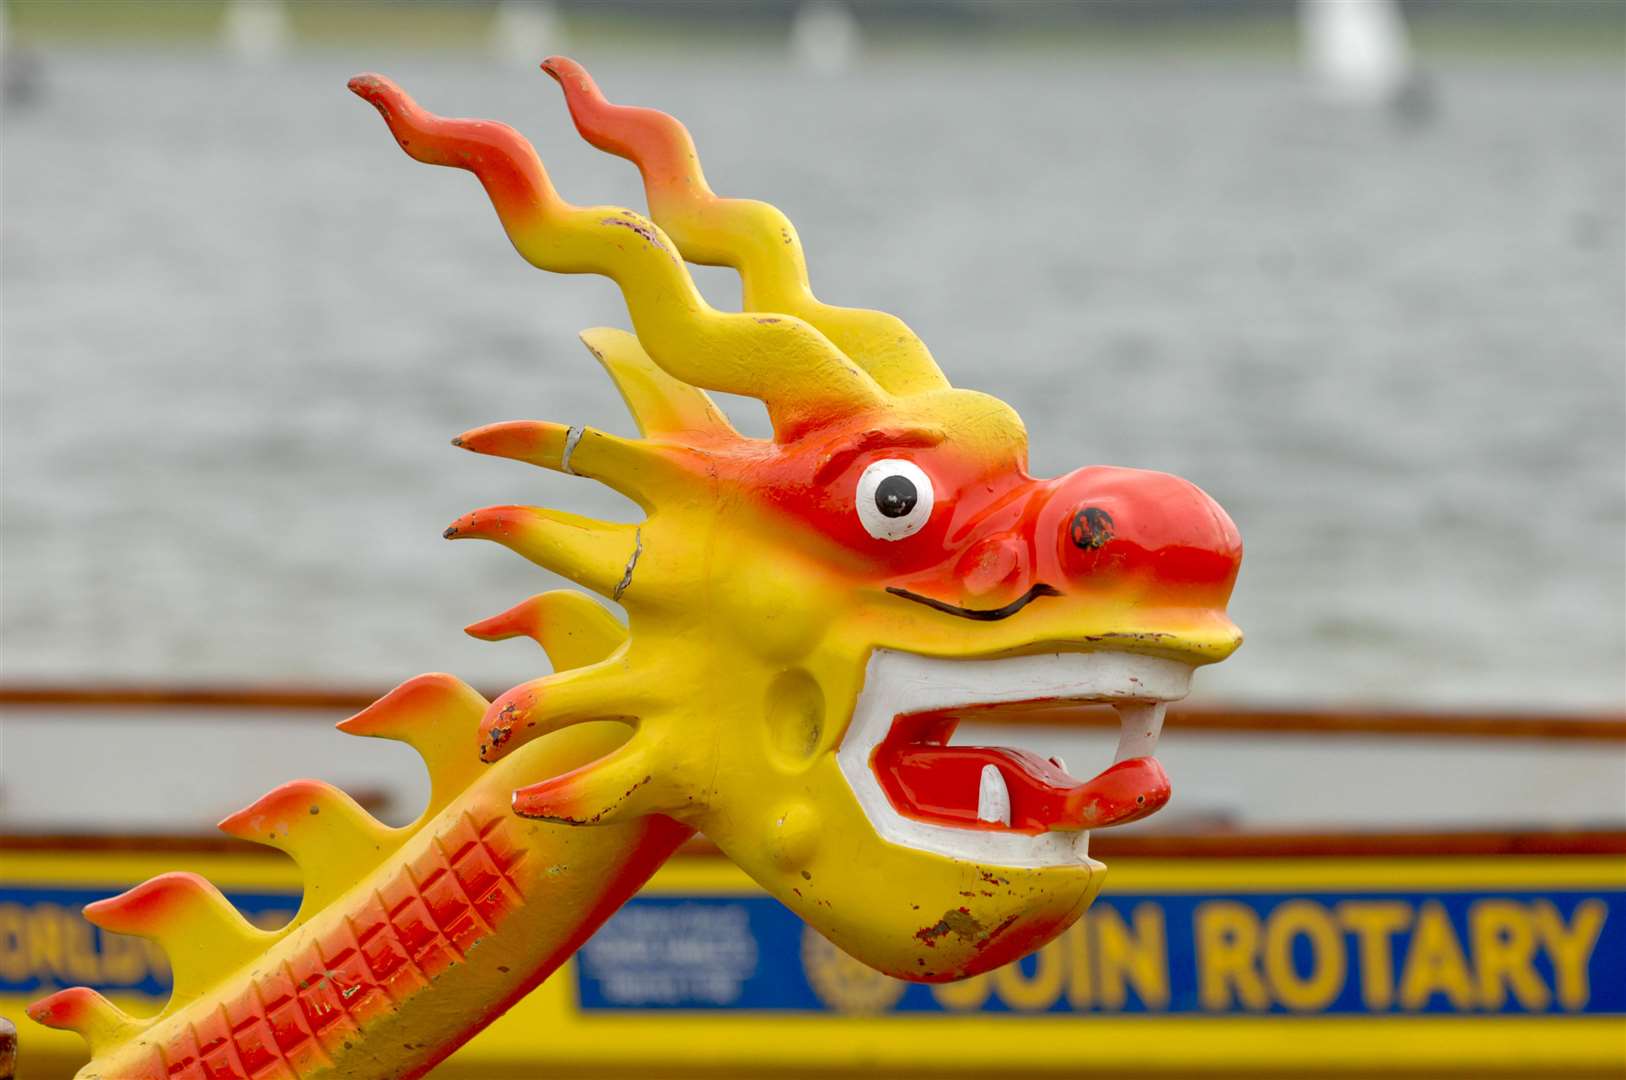 Dragon Boat Racing at Bewl Water